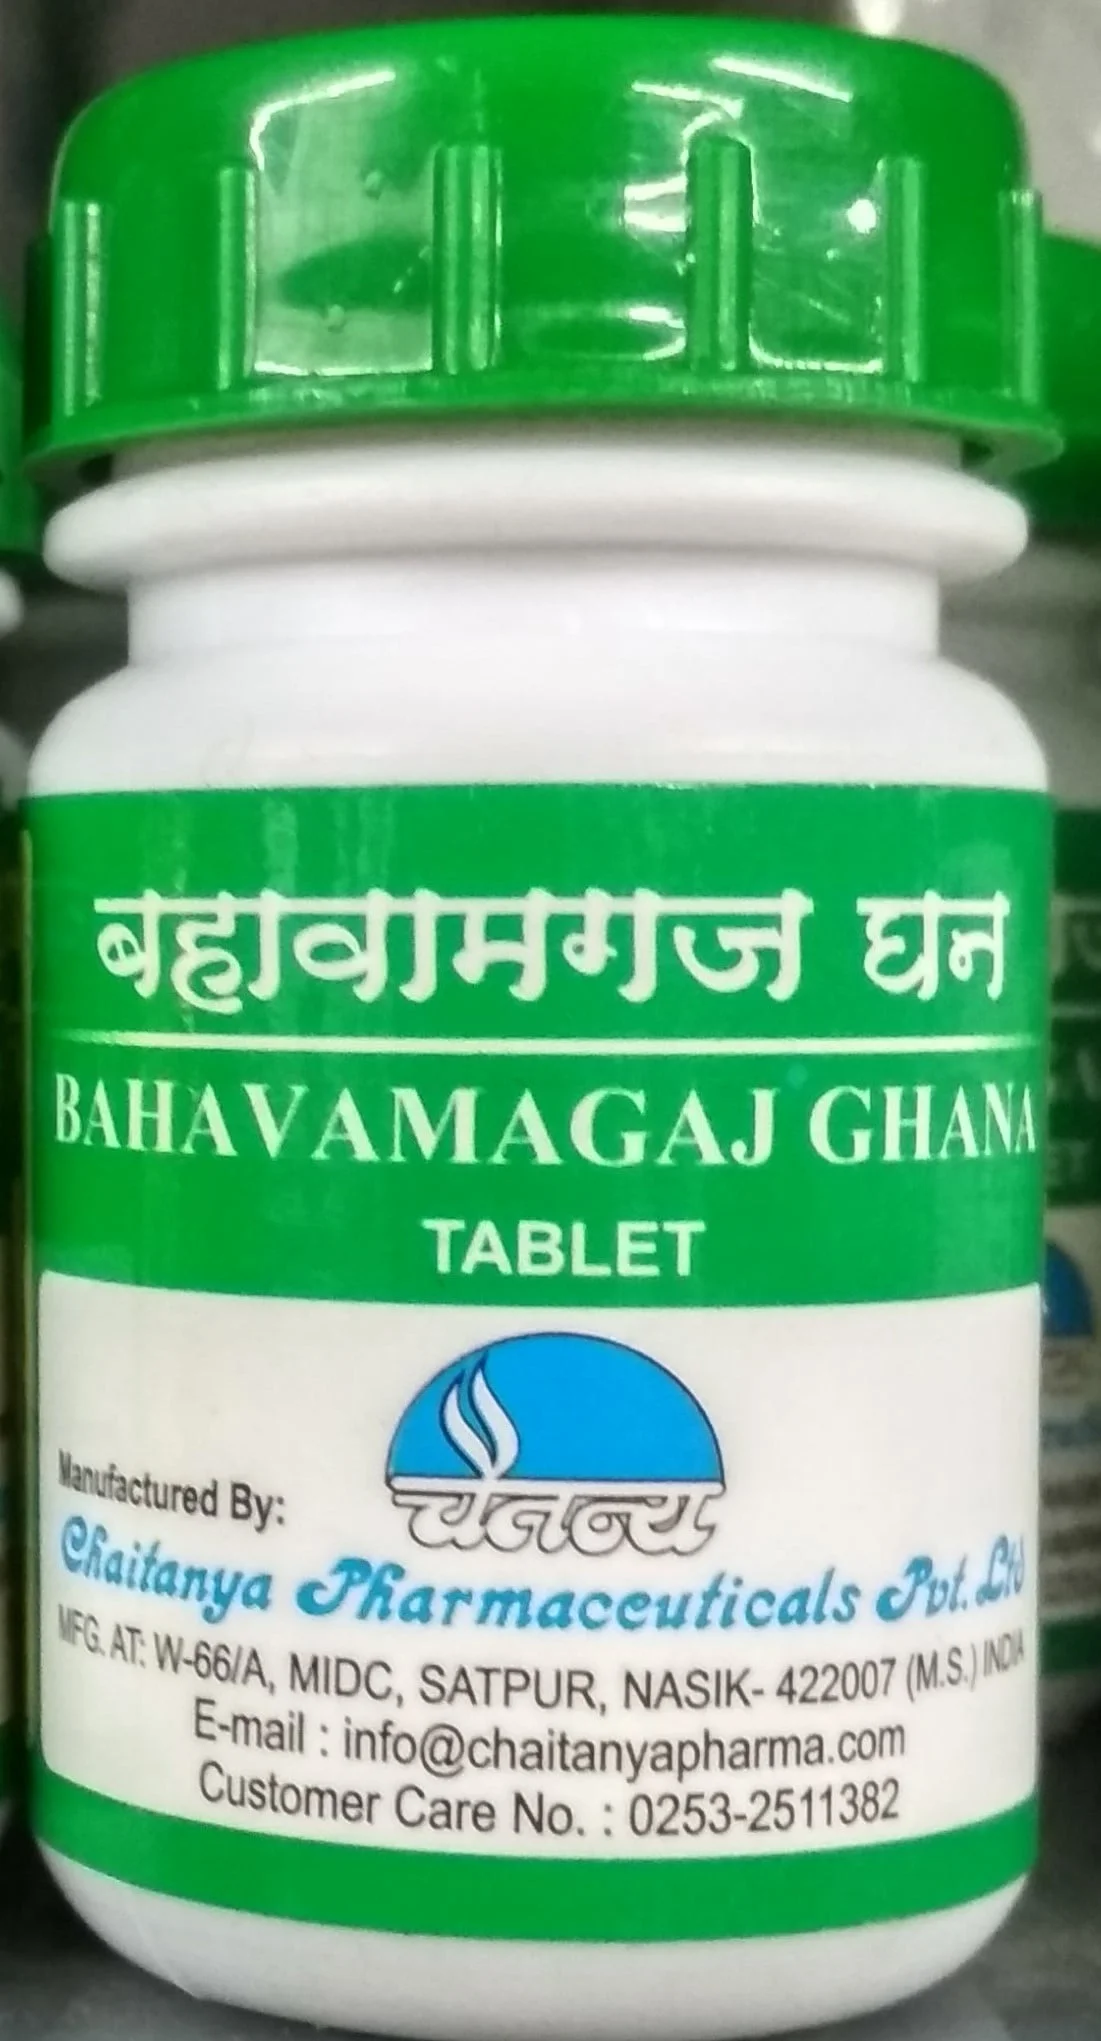 bahavamagaj ghana 60tab upto 20% off chaitanya pharmaceuticals